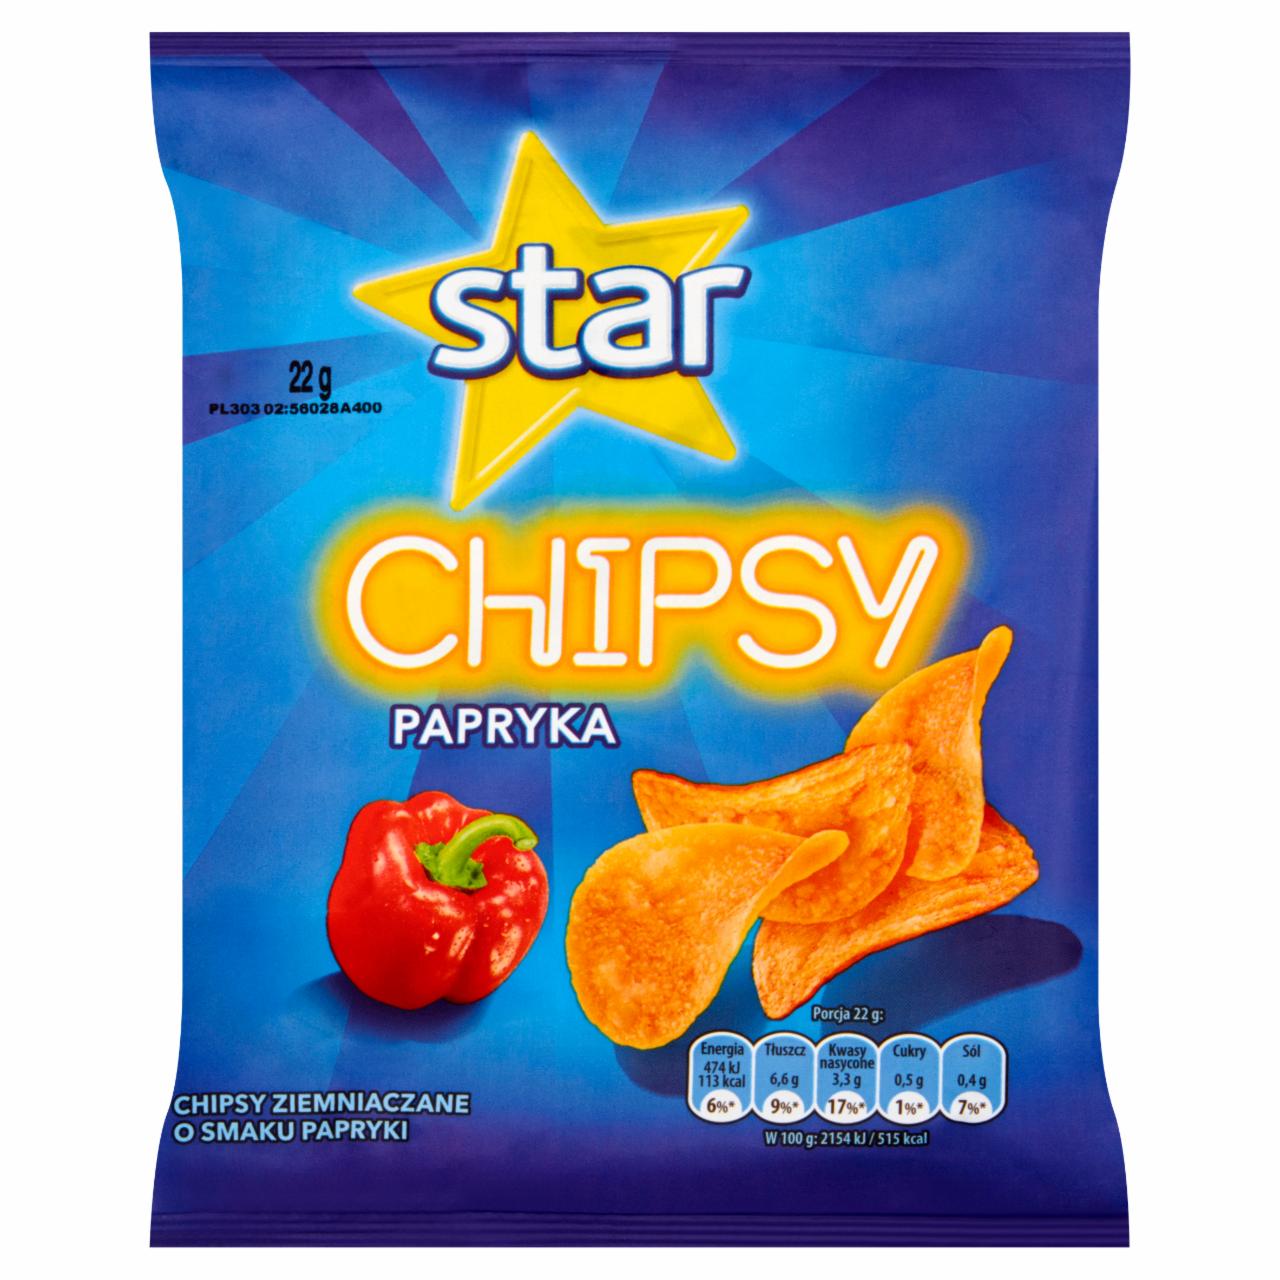 Zdjęcia - Star Chipsy papryka 22 g